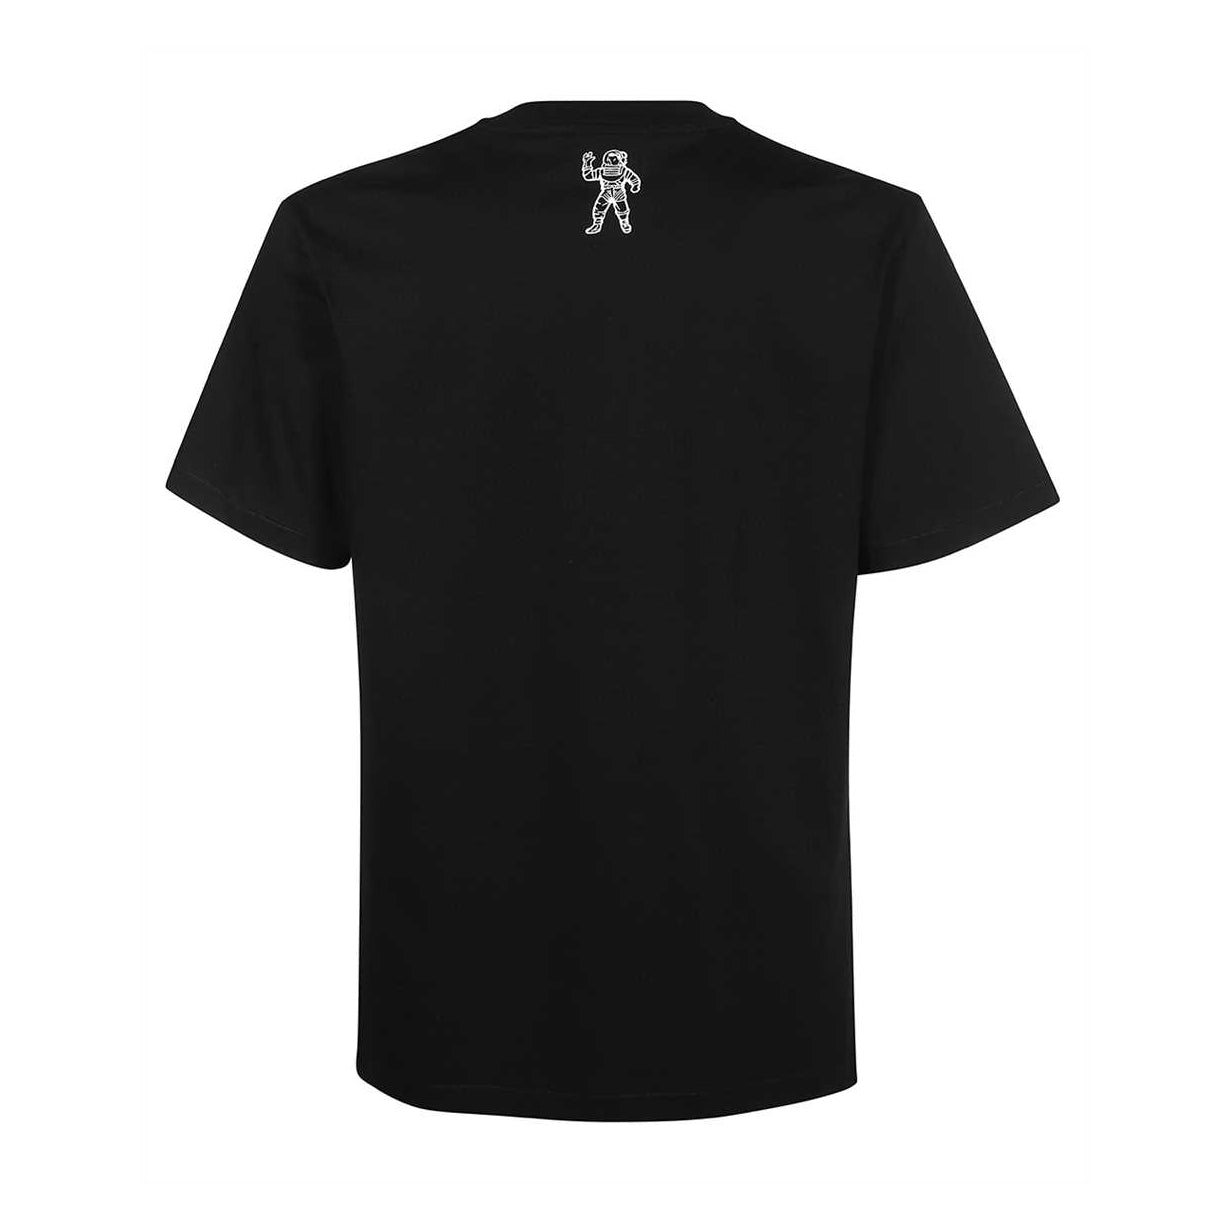 BBC Static T-shirt - Black - Escape Menswear